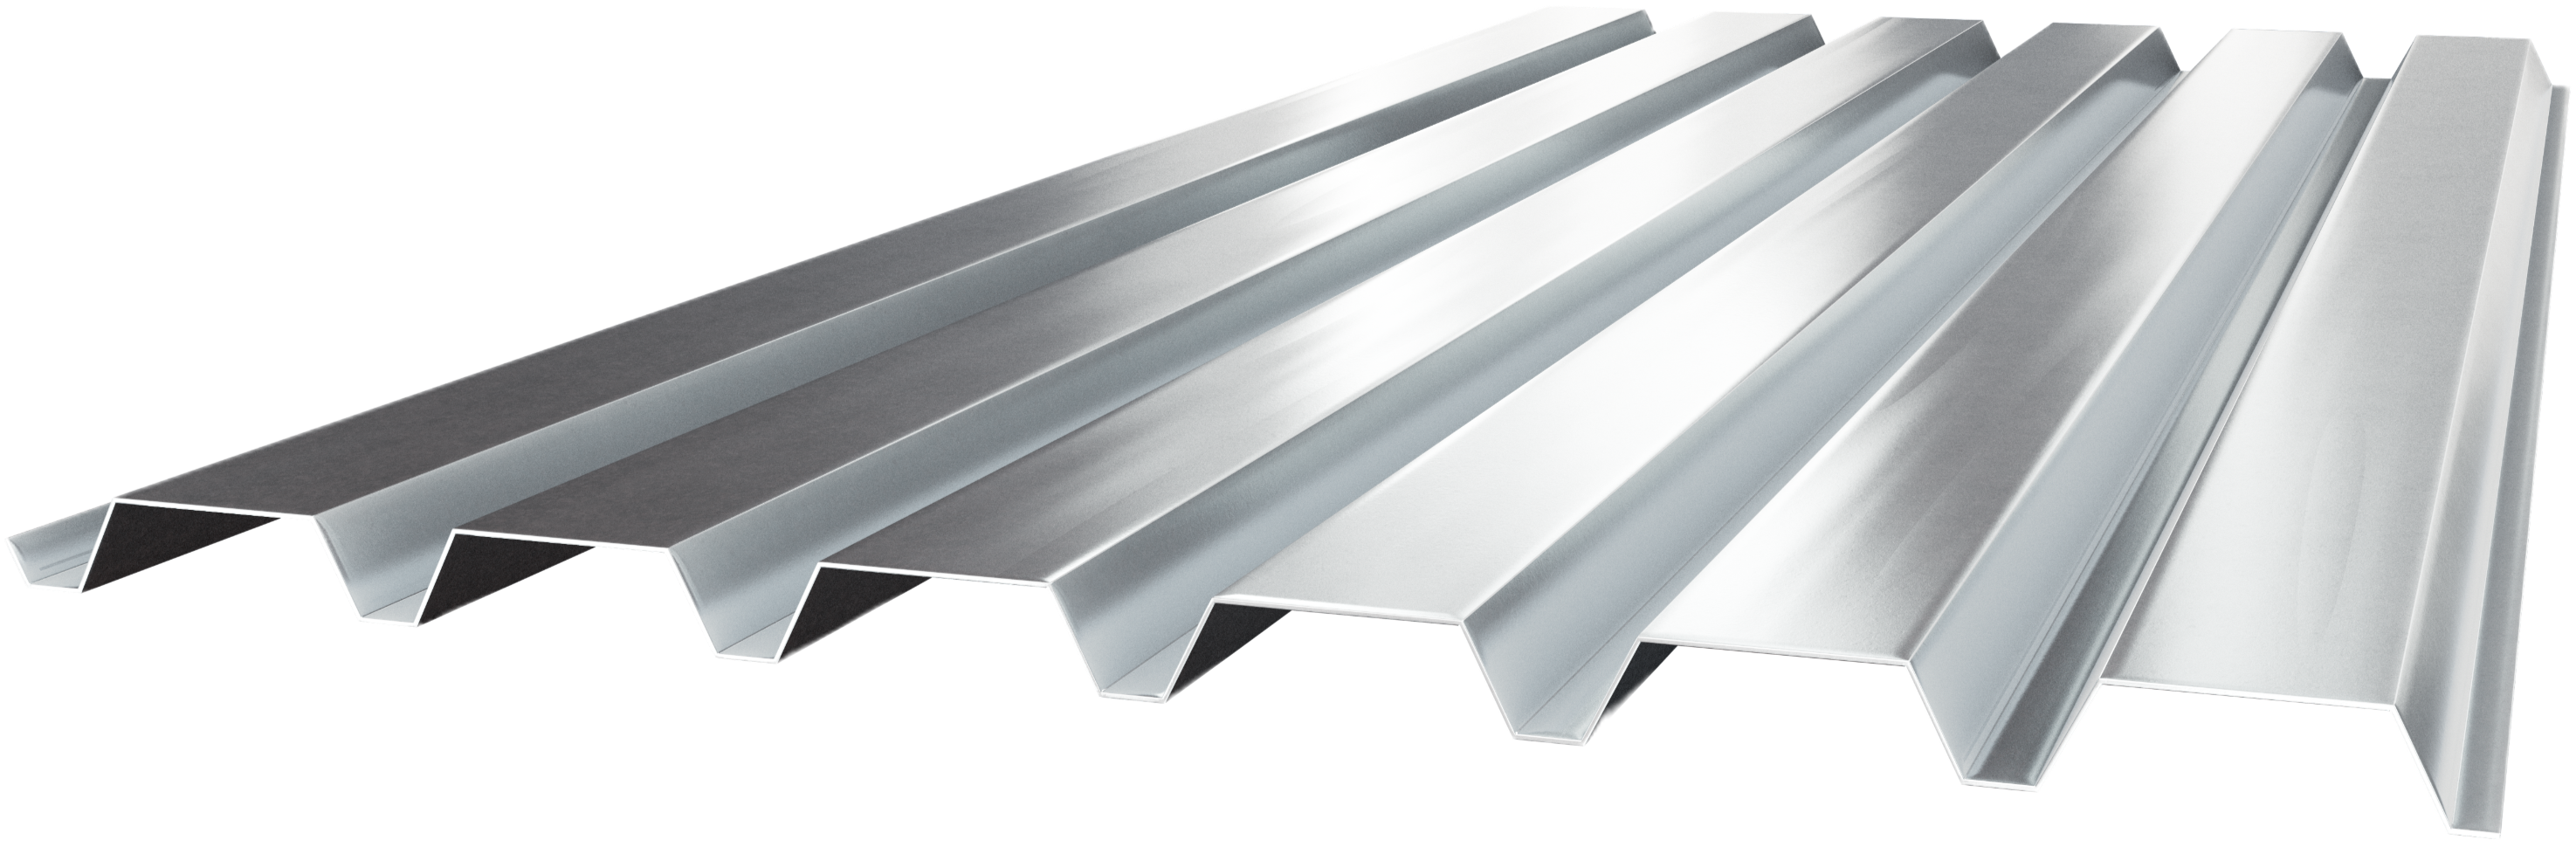 1.5 B Metal Roof Deck | Metal Rolled Steel | Cordeck